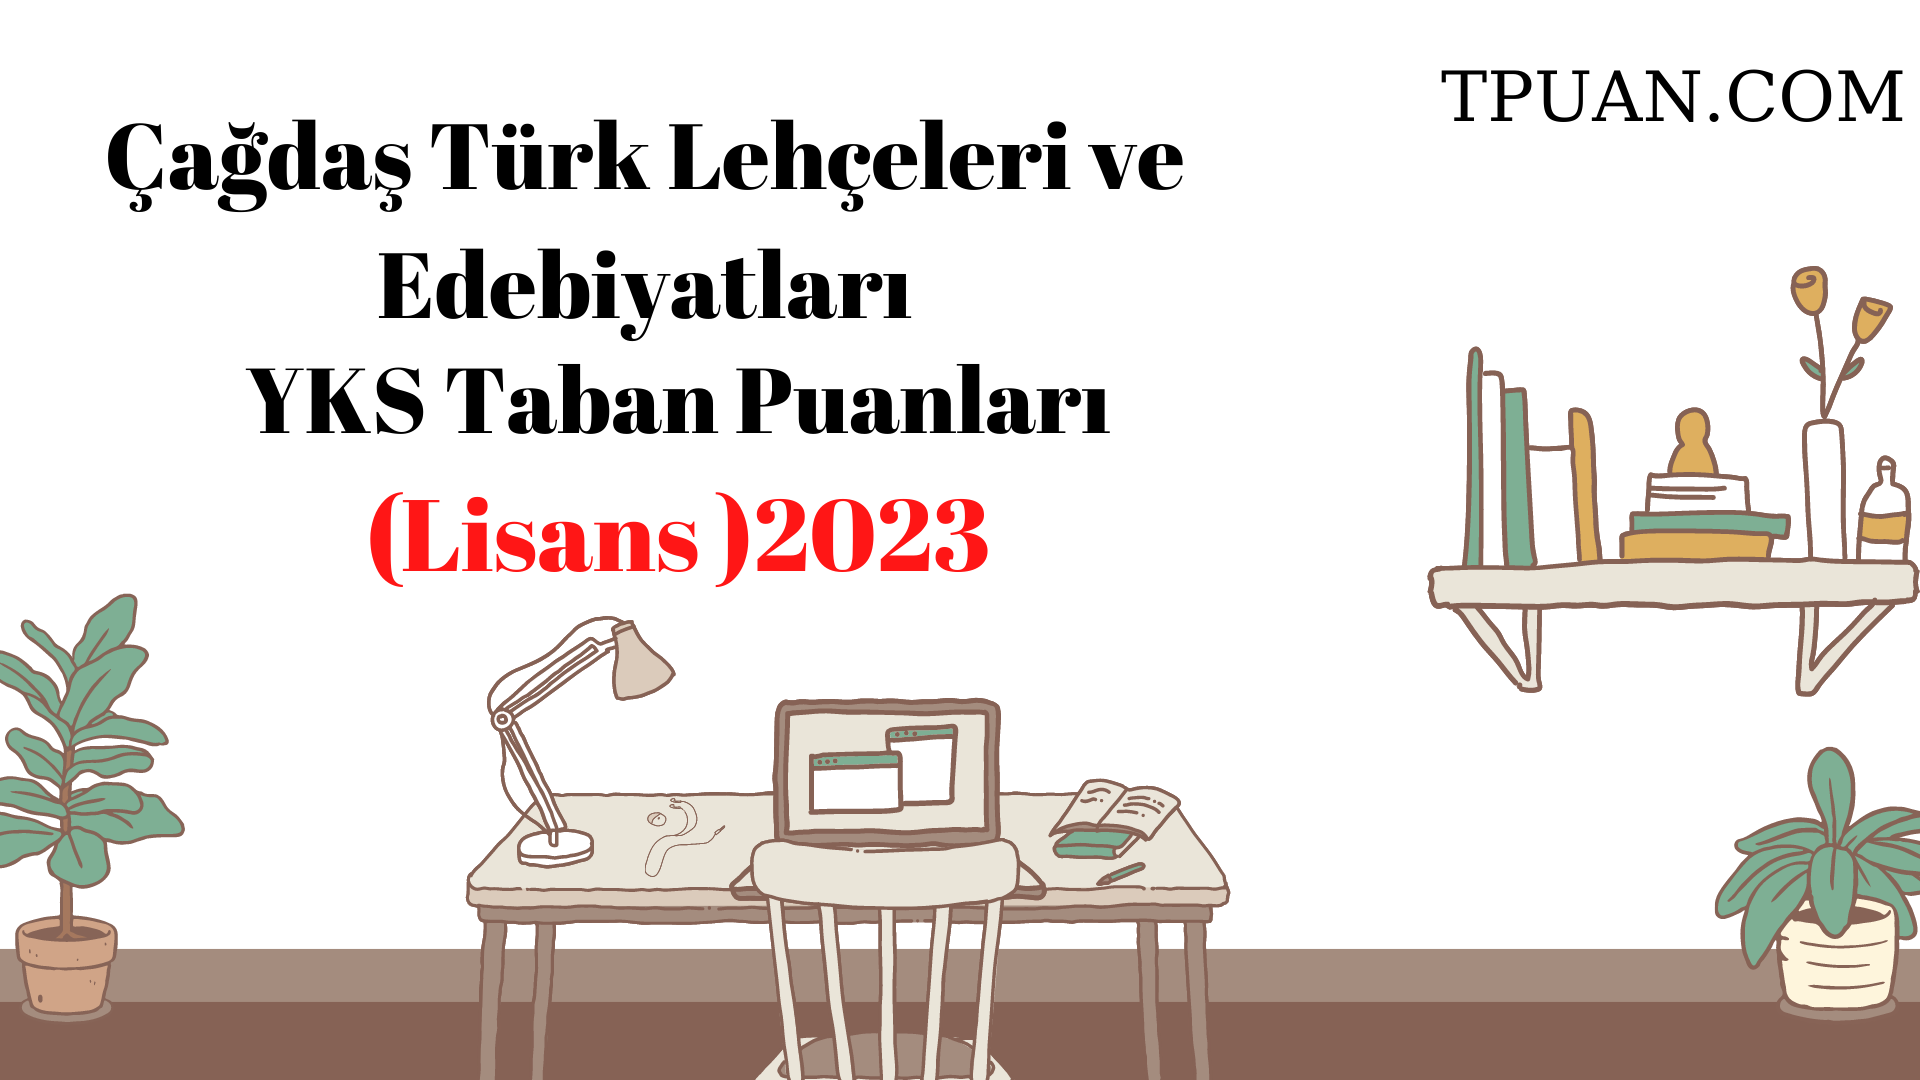  Çağdaş Türk Lehçeleri ve Edebiyatları Bölümü YKS Taban Puanları (4 Yıllık) 2023